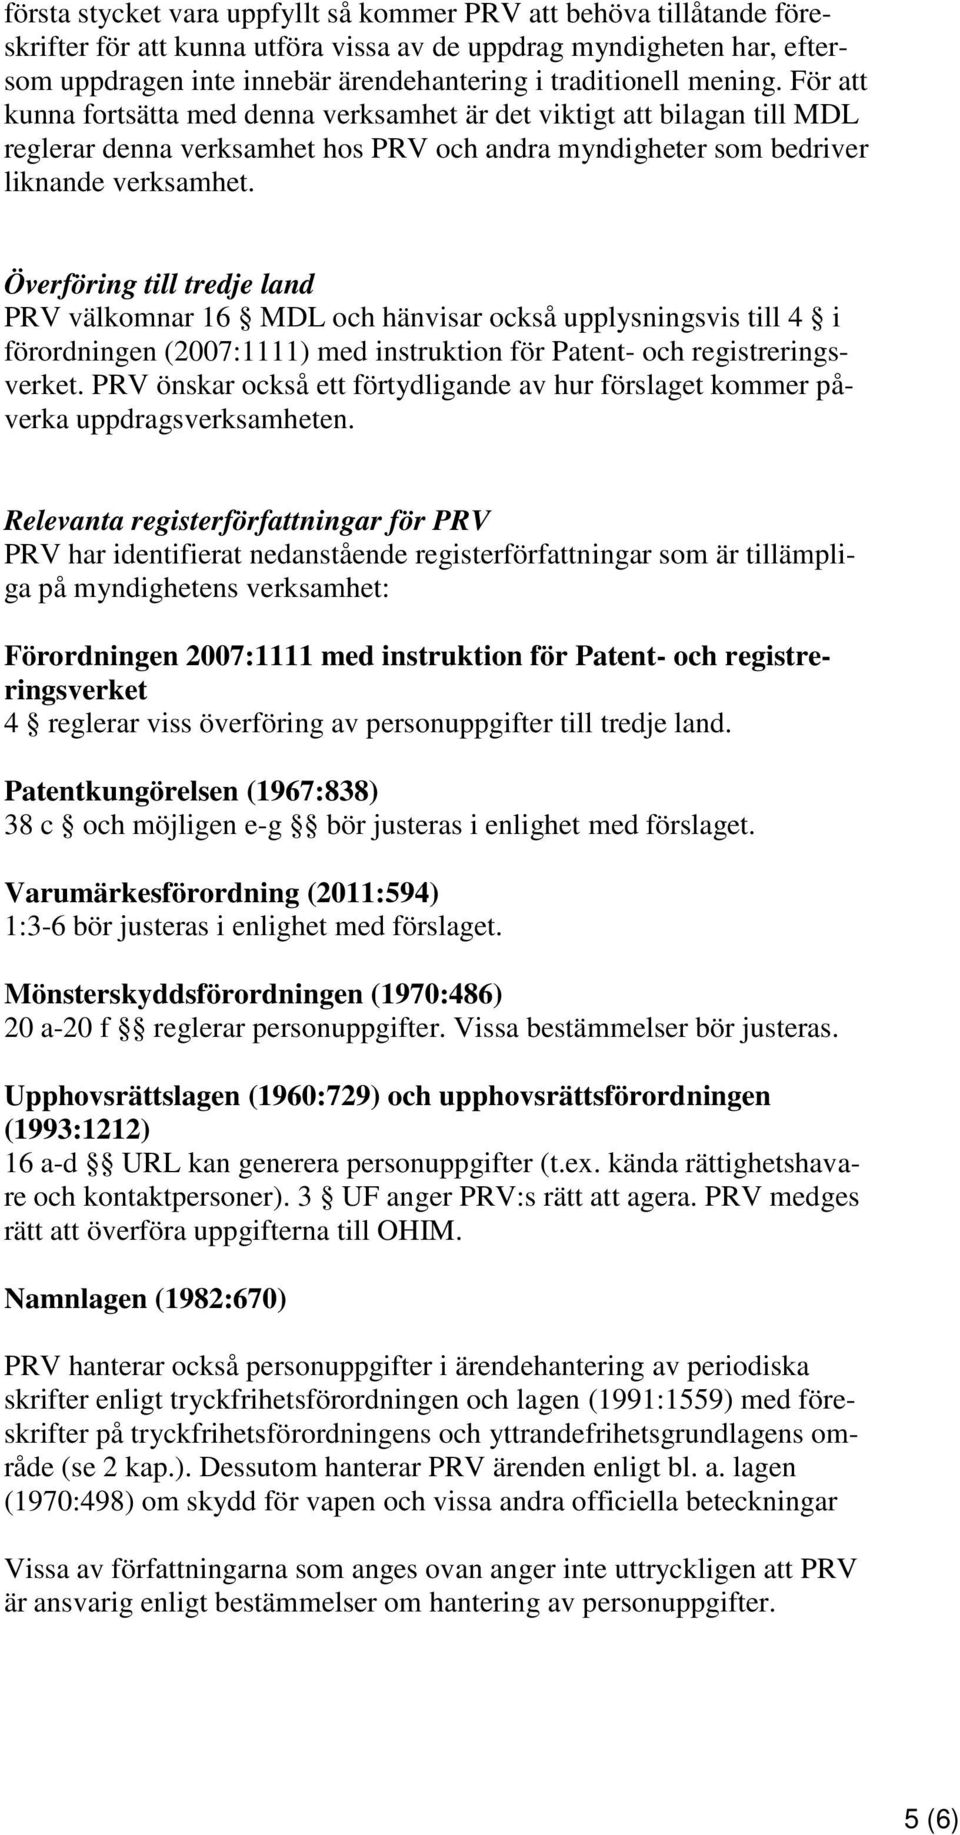 Överföring till tredje land PRV välkomnar 16 MDL och hänvisar också upplysningsvis till 4 i förordningen (2007:1111) med instruktion för Patent- och registreringsverket.